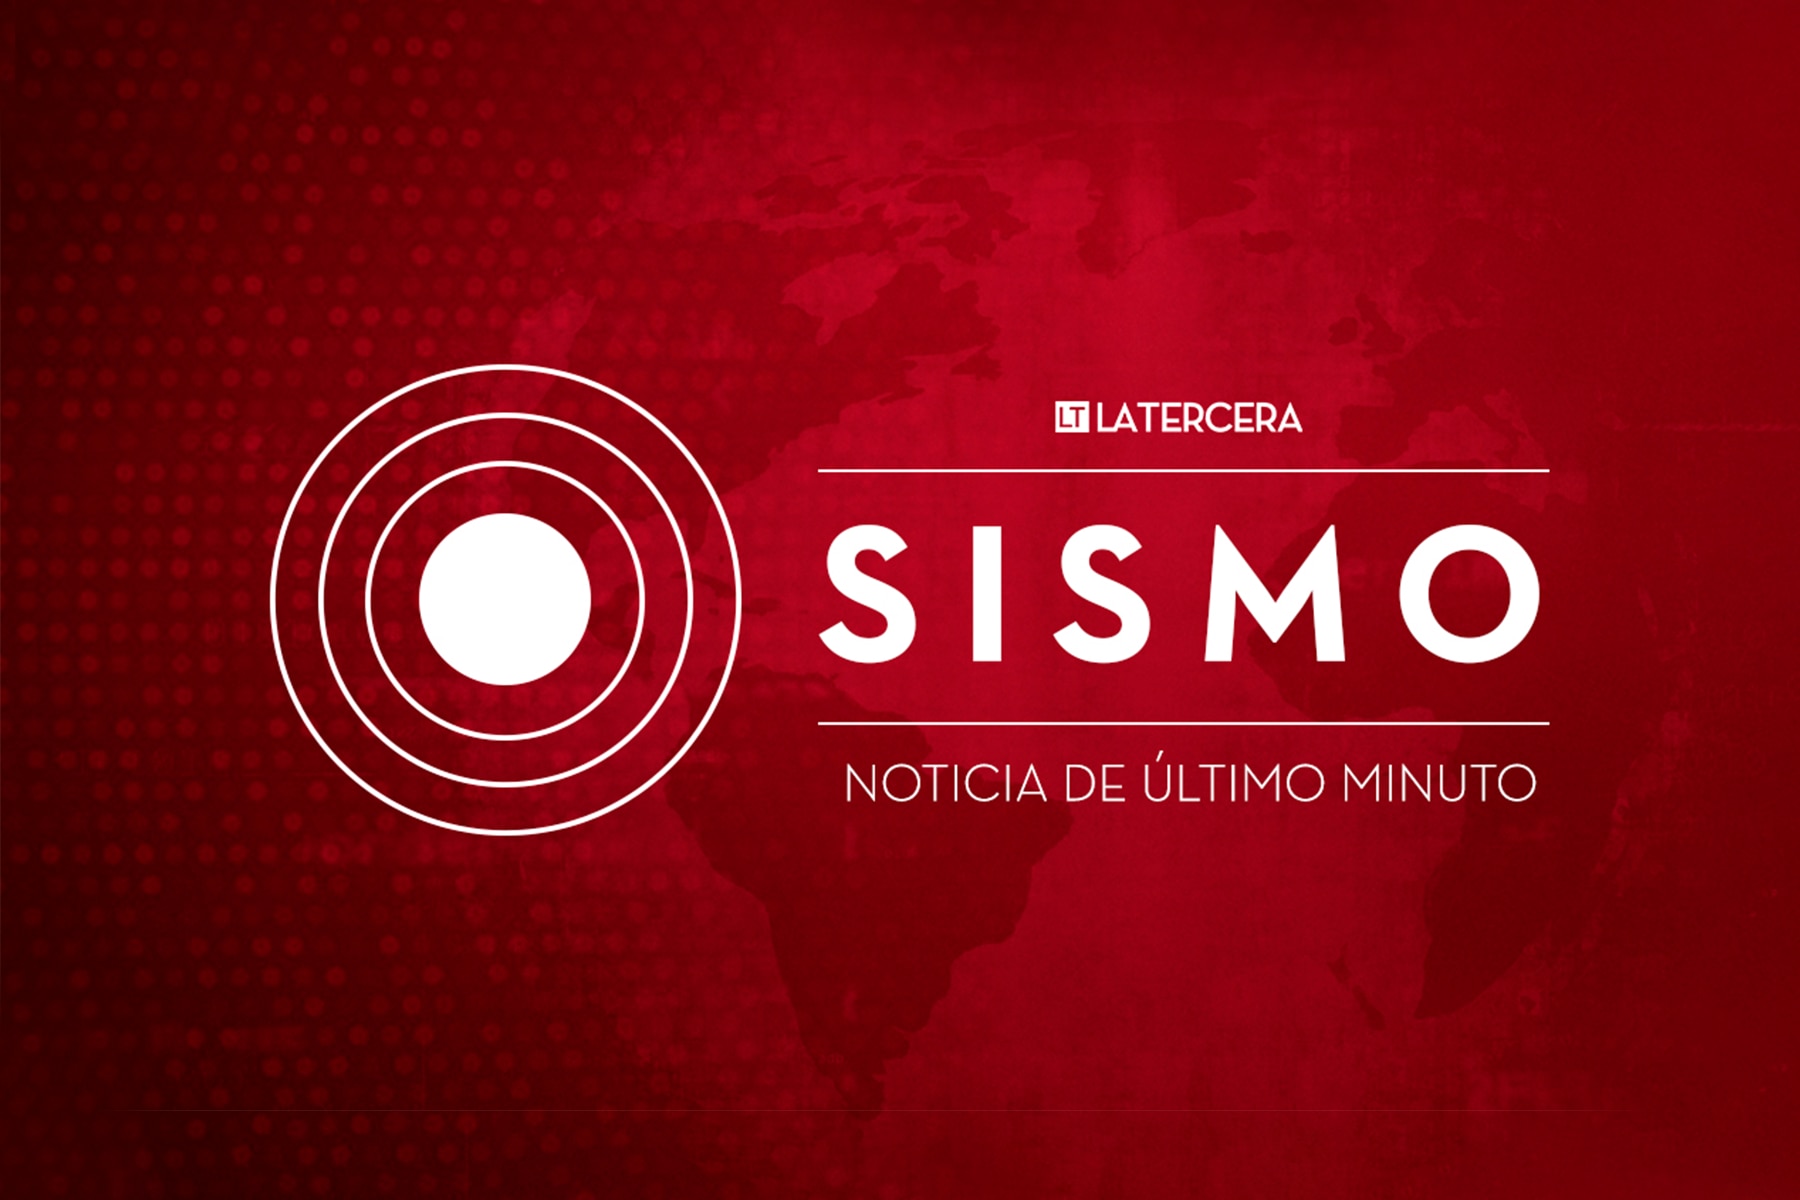 temblor hoy, lunes 12 de febrero en chile: consulta epicentro y magnitud